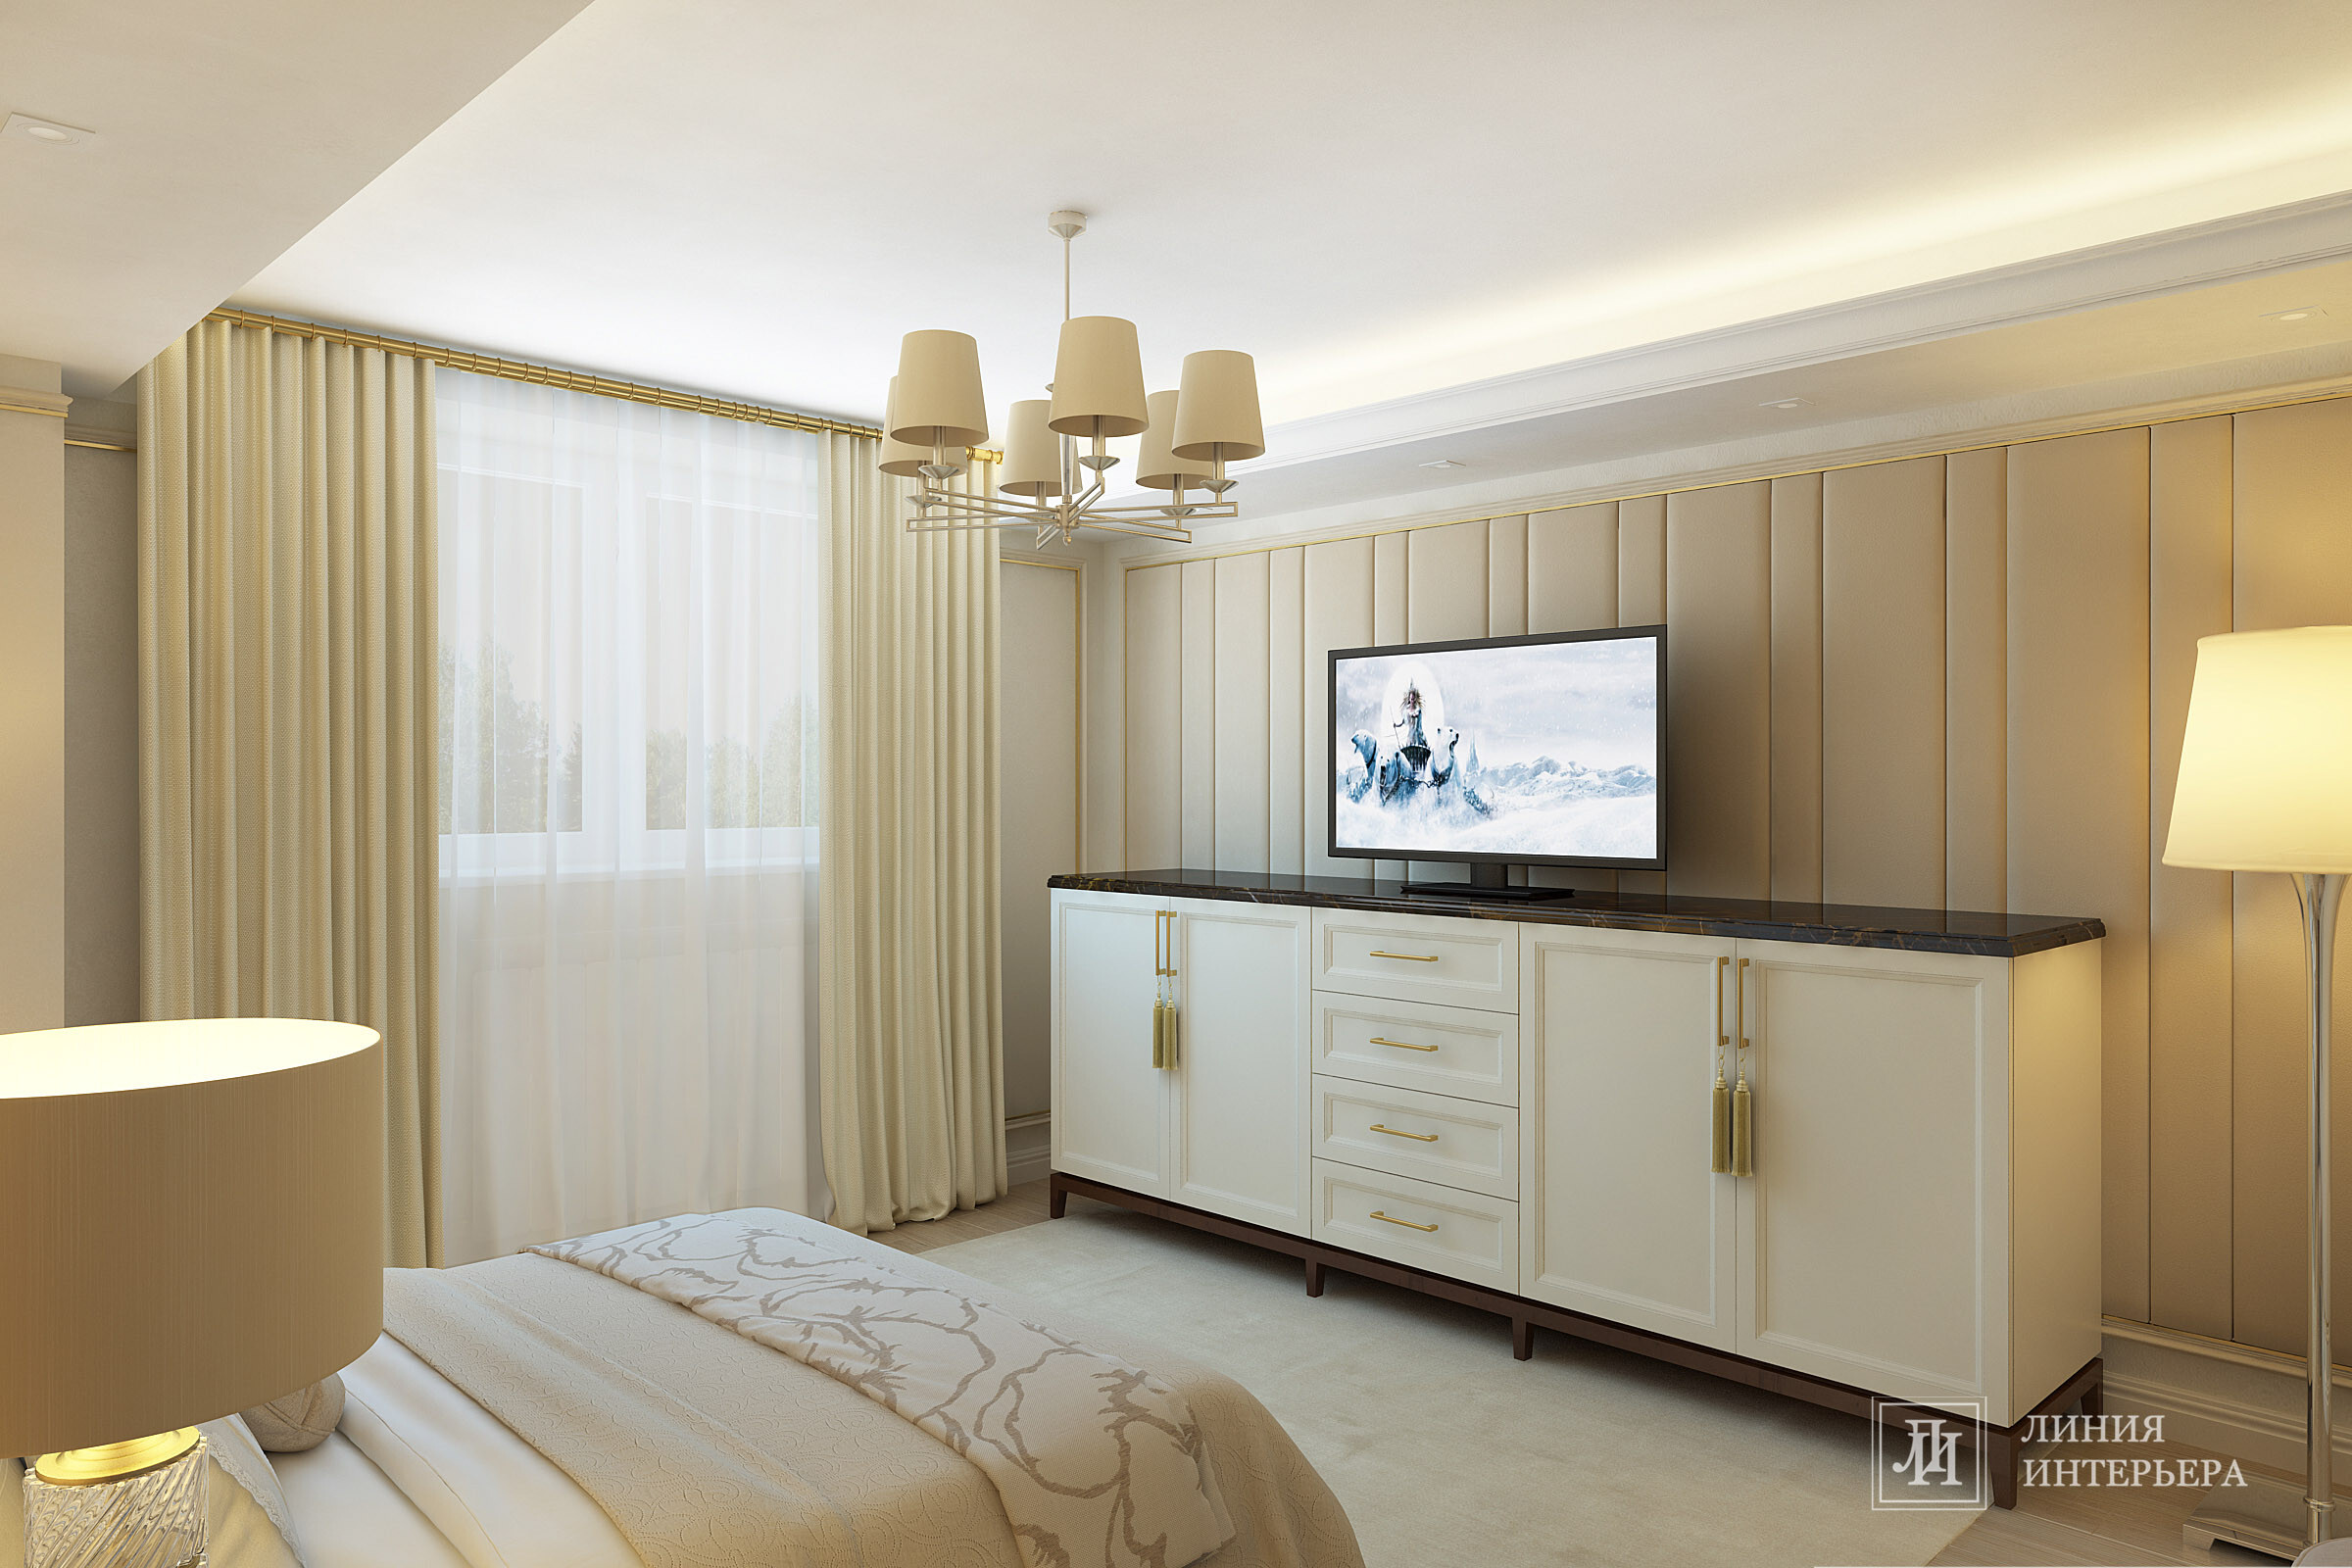 Интерьер спальни с панно за телевизором, подсветкой настенной, подсветкой светодиодной и светильниками над кроватью в неоклассике